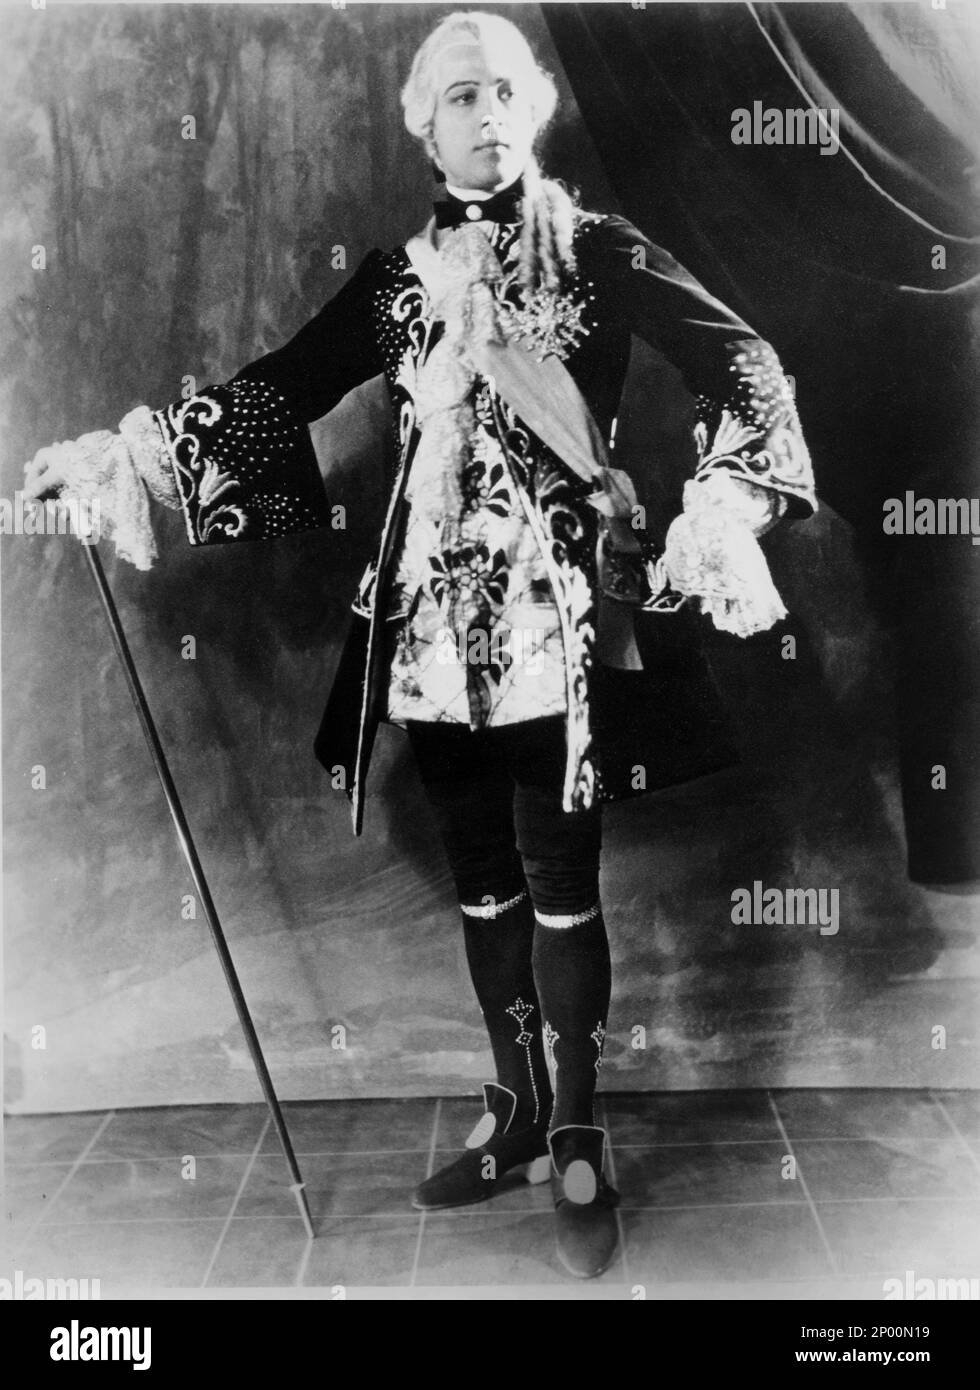 1924 , Vereinigte Staaten : der Stummfilmdarsteller RUDOLPH VALENTINO ( geboren Rodolfo Guglielmi , 1895 - 1926 ), Probeaufnahme FÜR MONSIEUR BEAUCAIRE von Sydney Olcott , aus dem Roman von Booth Tarkington , Kostüm von George Barbier - CINEMA MUTO - RODOLFO - attore cinematografico - Bastone da passeggio - Skipe - Schuhe - Stivali - Kragen - colletto - LATEINAMERIKANISCHER LIEBHABER - italoamericano - italo-americano - Emigrant - emigrante - italo-american - Portrait - Rituca - Parperücke - pizzo - Spitze - Rouches --- Archivio GBB Stockfoto